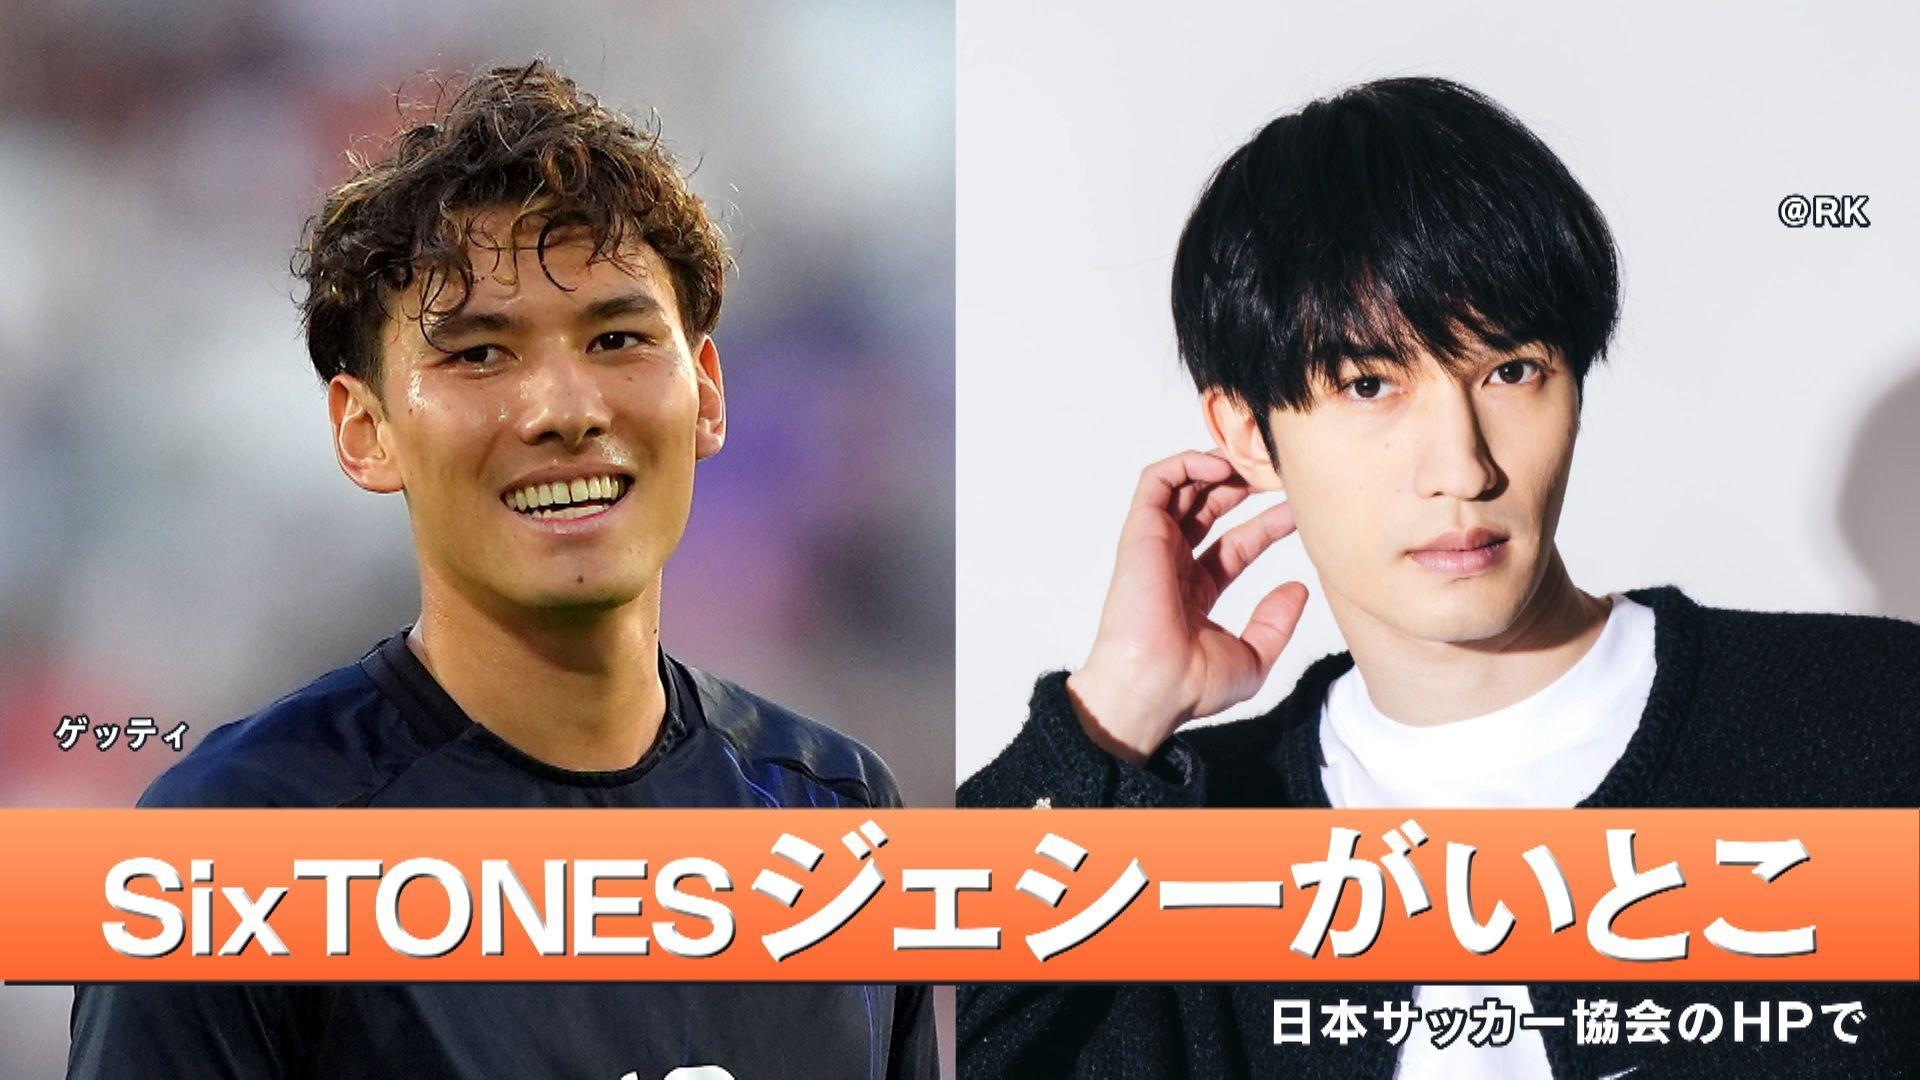 【衝撃】パリ五輪サッカー日本代表・佐藤恵允選手 いとこが“SixTONES ジェシー”「沢山の感動と沢山の勇気をありがとう」